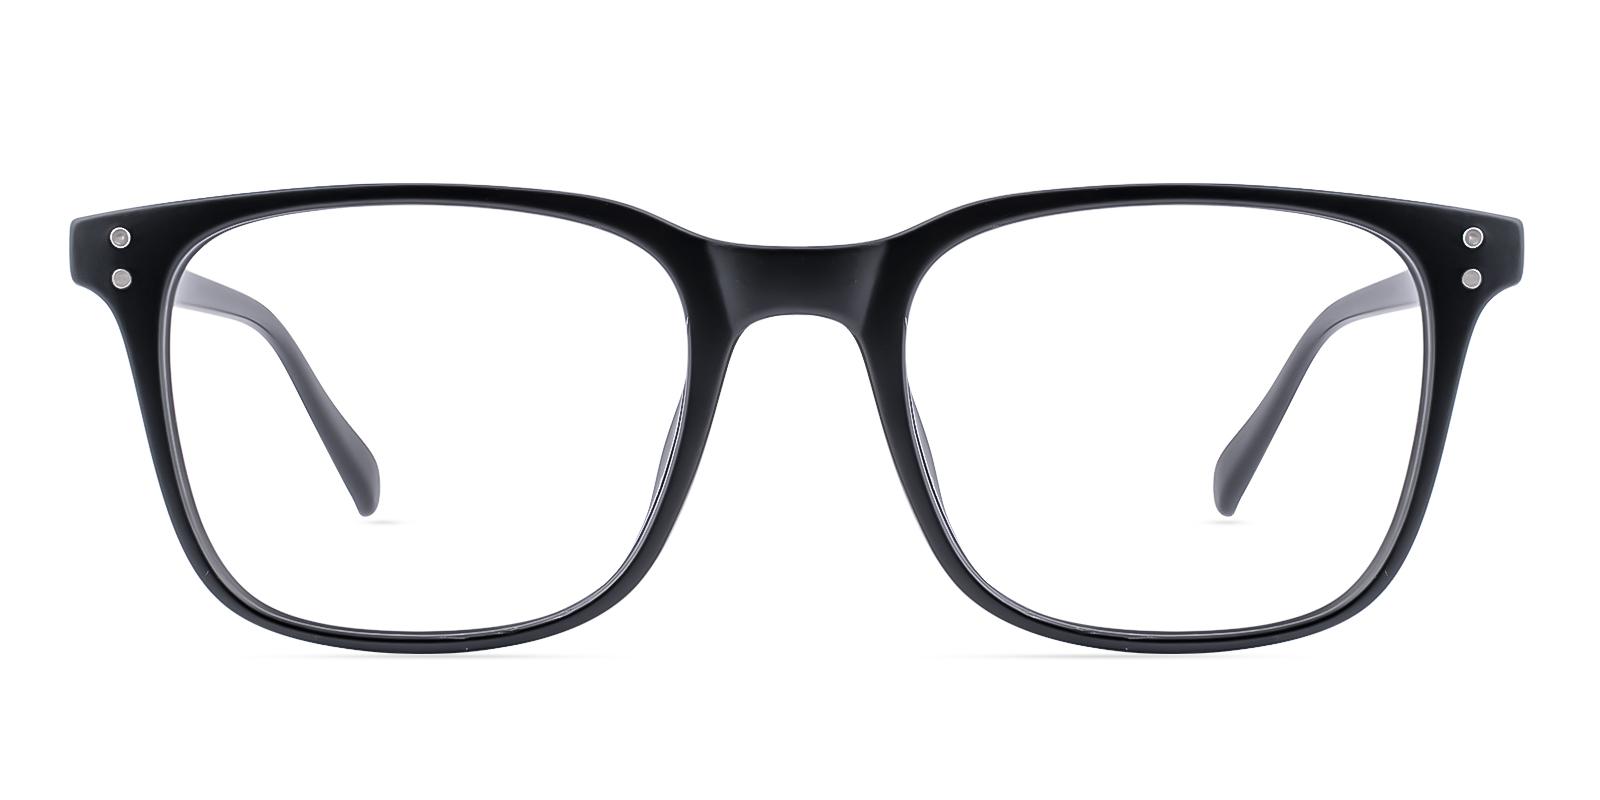 Clinoster Matte-black Plastic Eyeglasses , UniversalBridgeFit Frames from ABBE Glasses